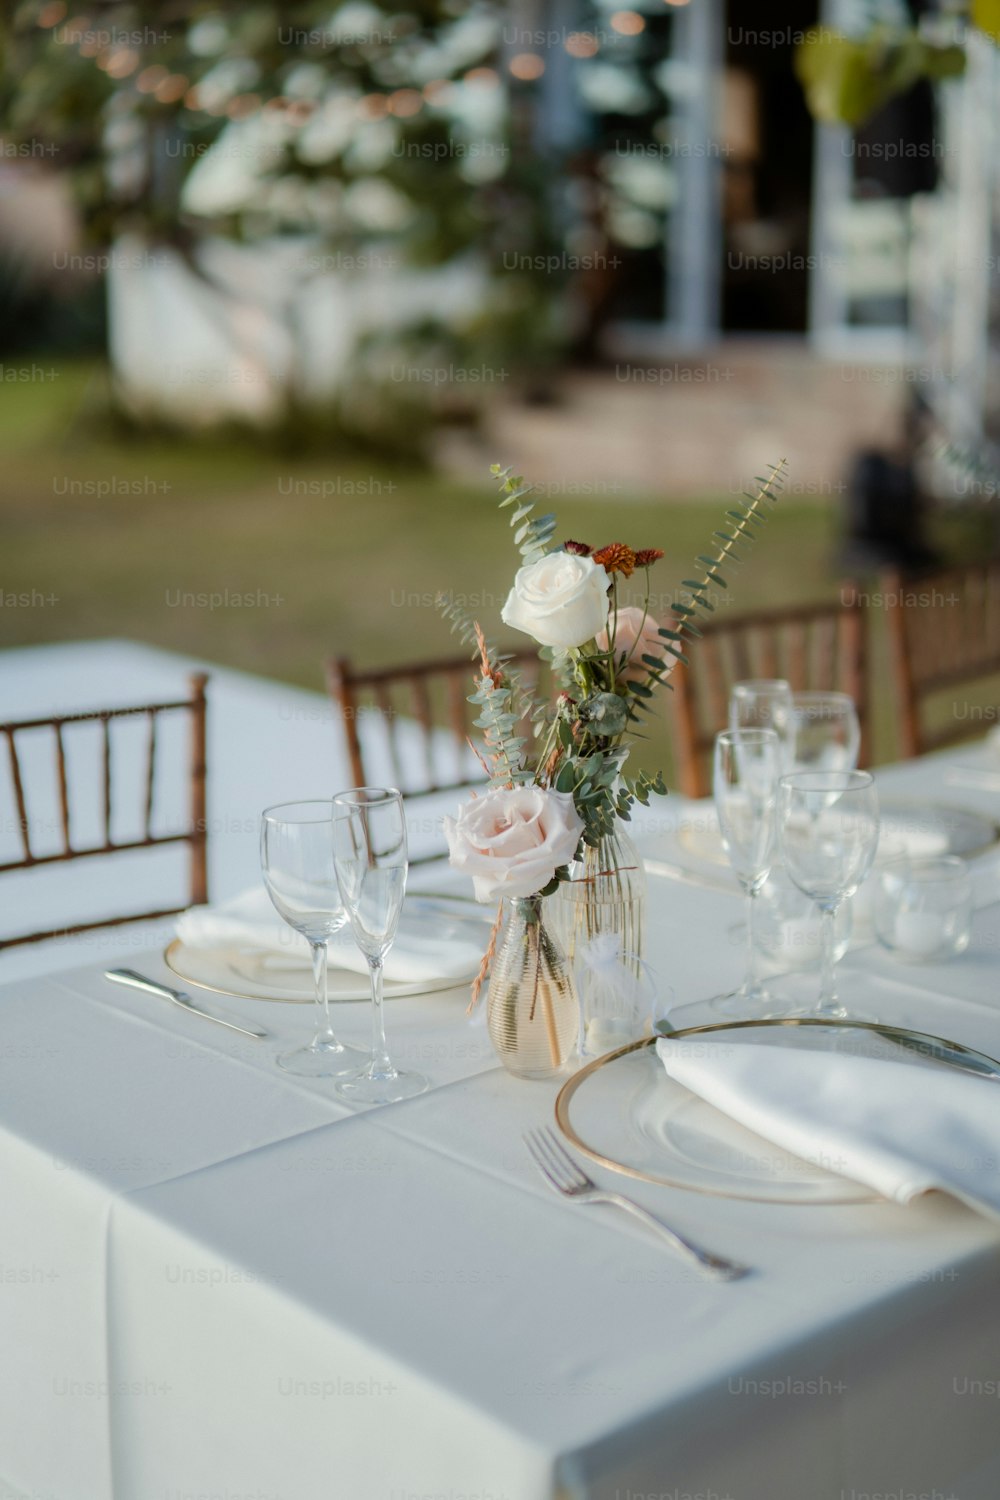 Una mesa puesta para una cena formal con flores en un jarrón